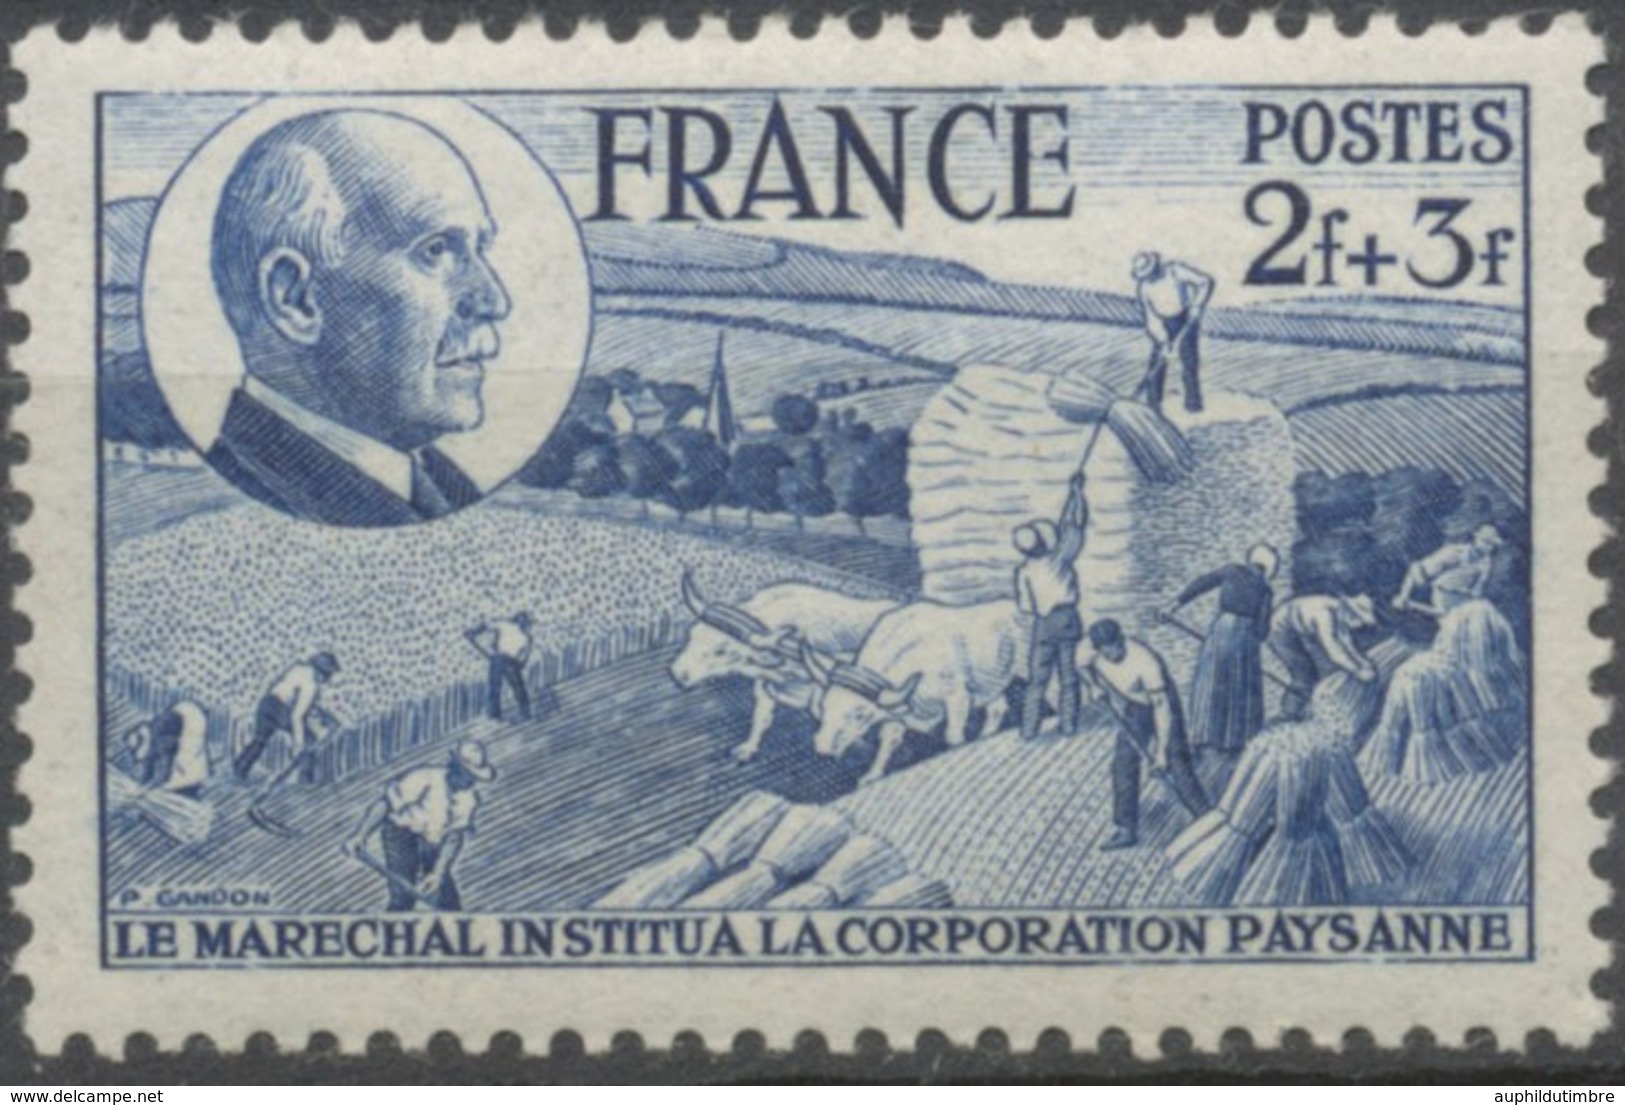 88e Anniversaire Du Maréchal Pétain. Corporation Paysanne.  2f.+3f. Bleu Neuf Luxe ** Y607 - Unused Stamps